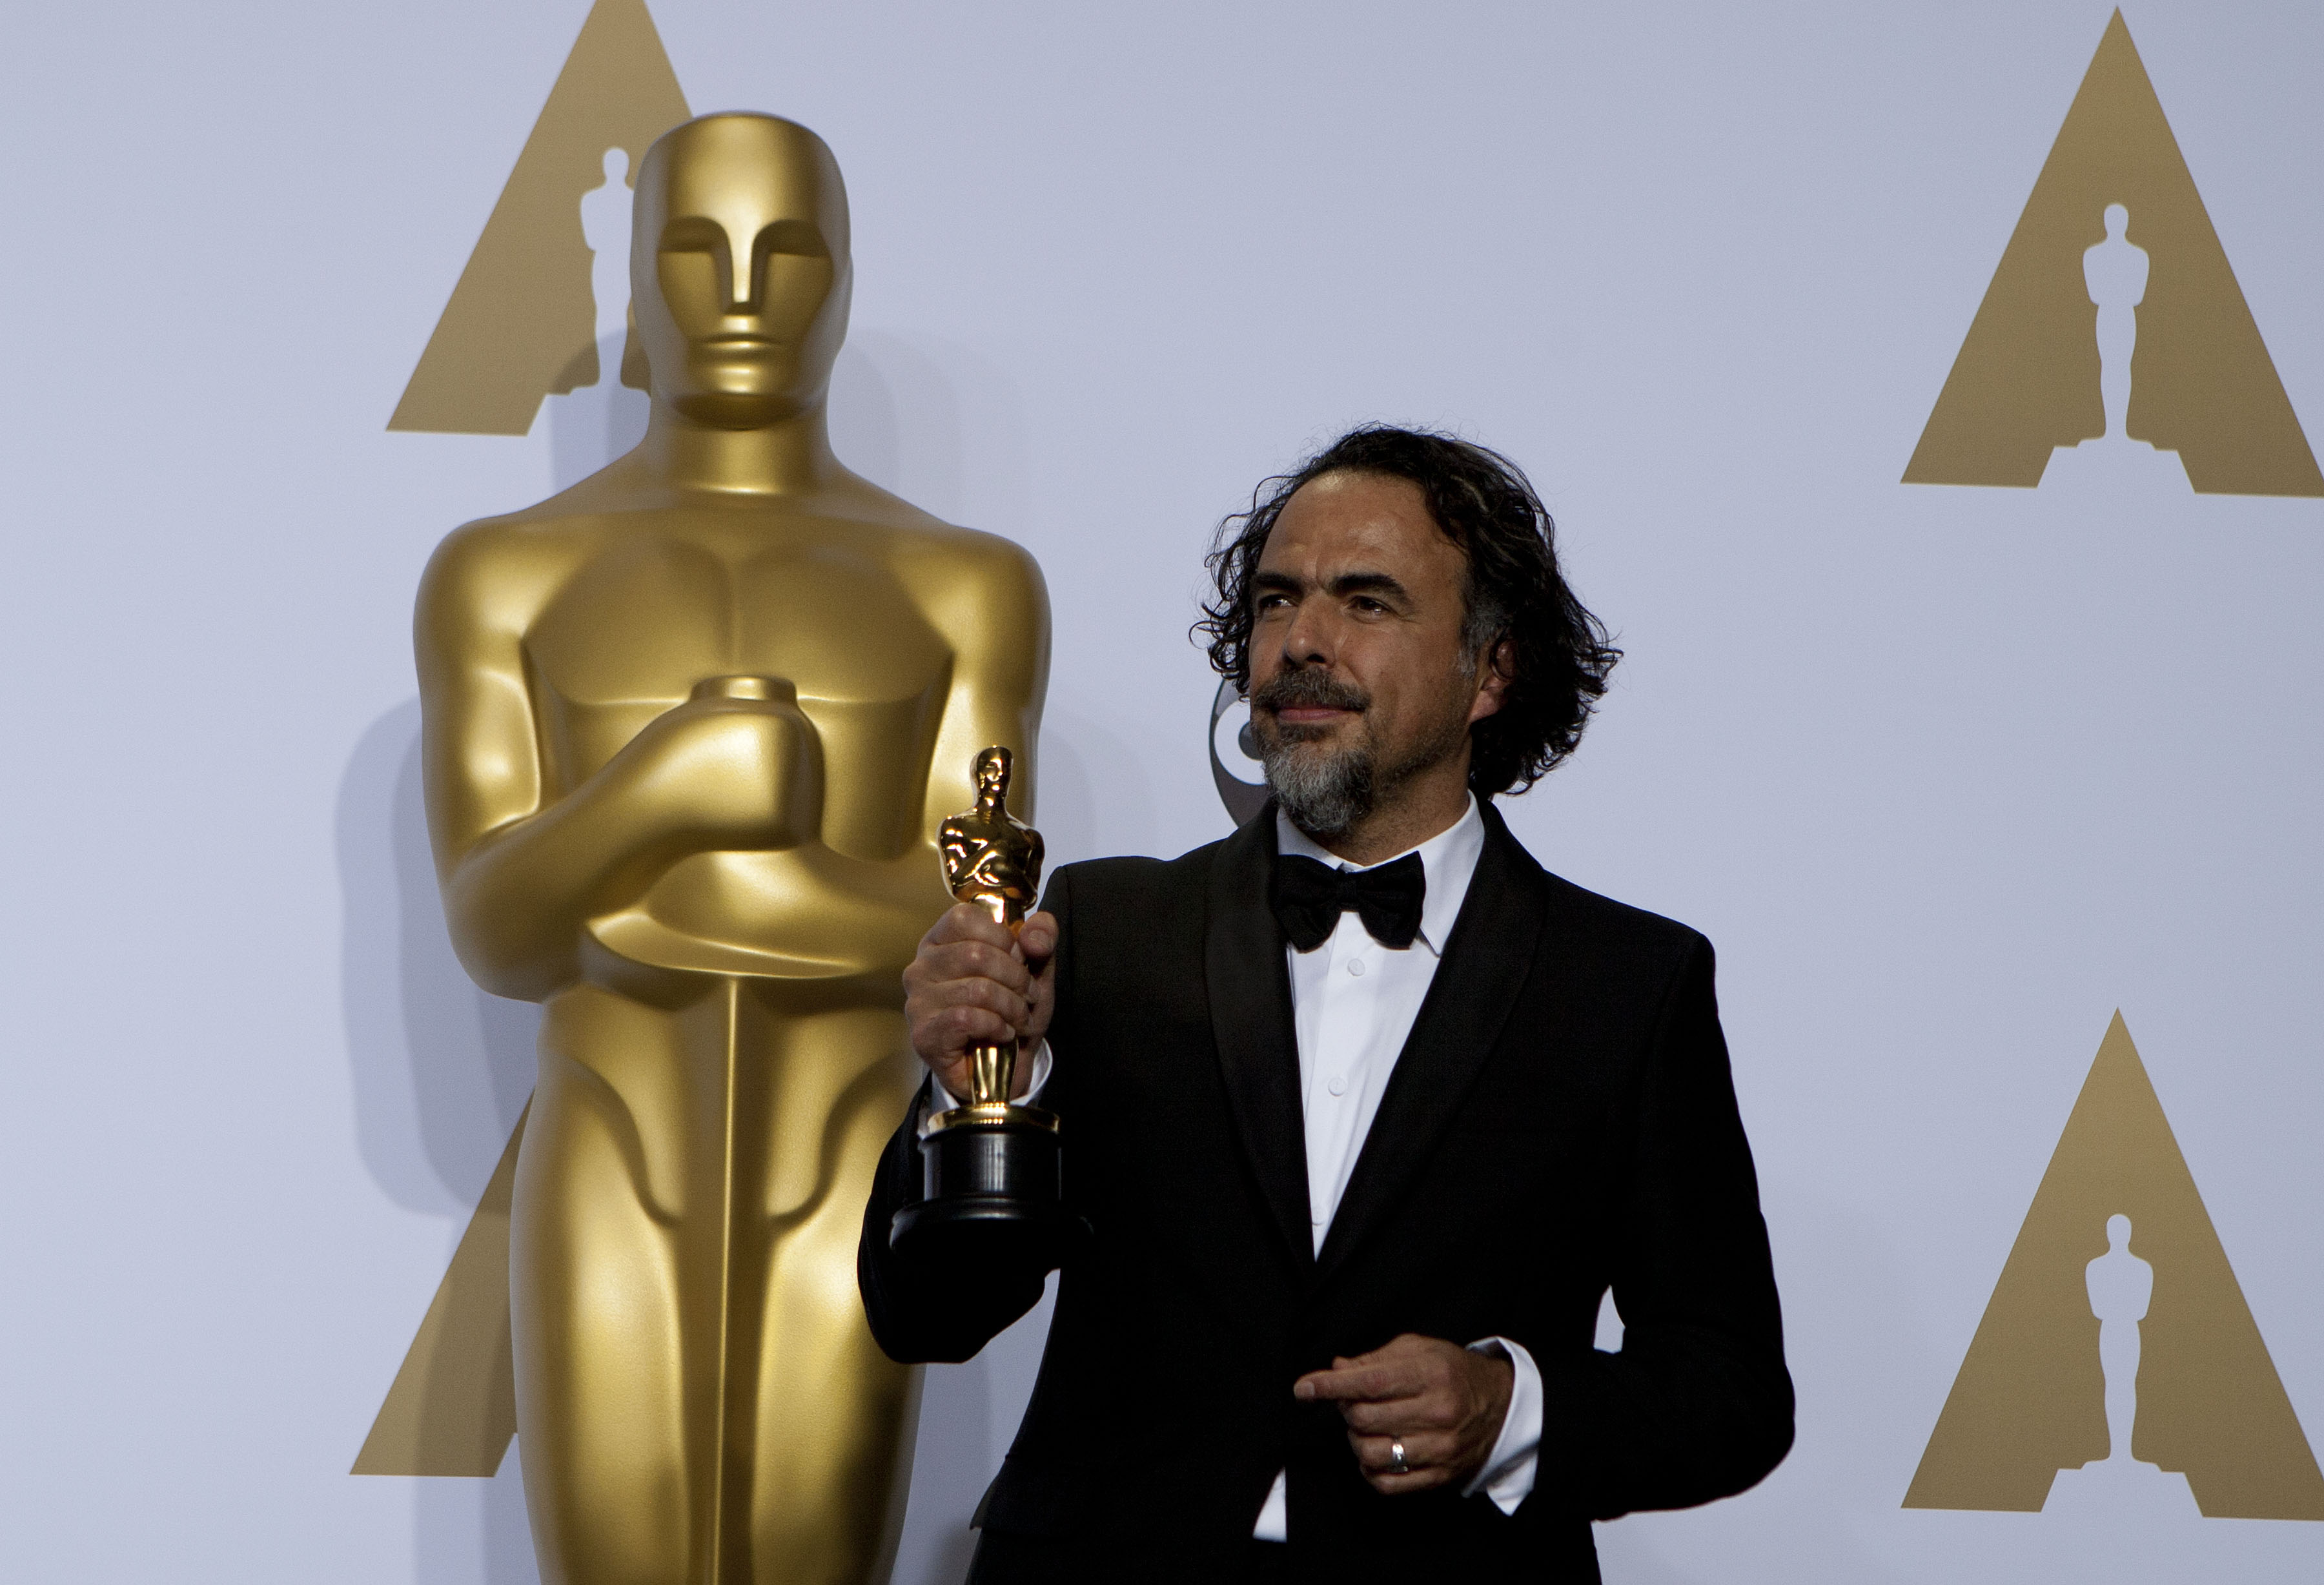 Premios Oscar: ¿Dónde se pueden ver las películas nominadas?